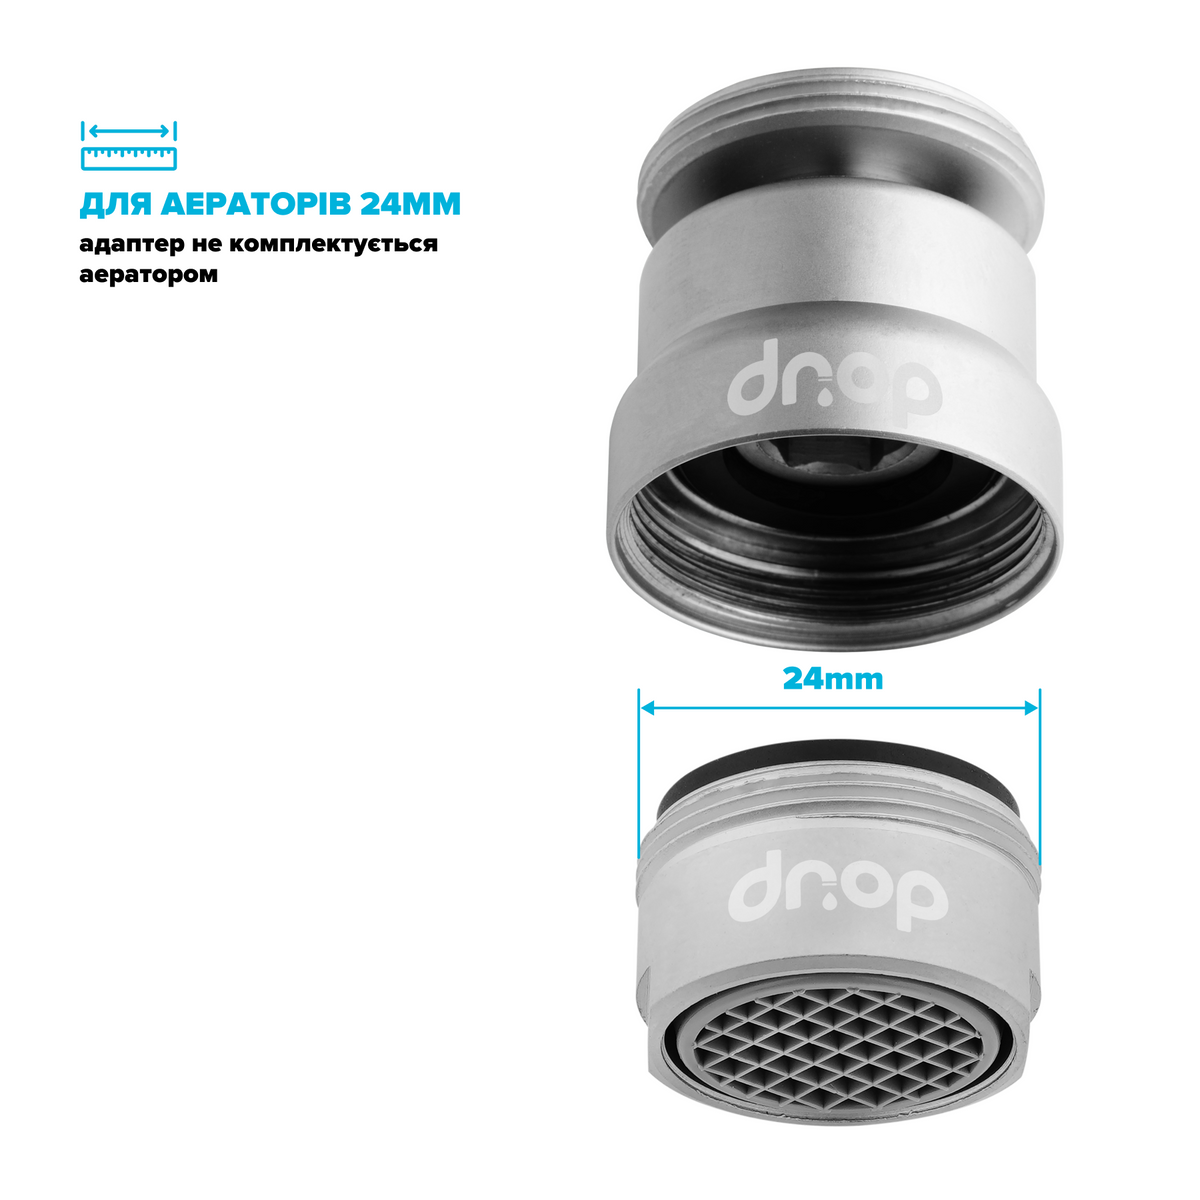 Поворотный 360° адаптер DROP COLOR CL360-MT внешняя резьба 24 мм угол 15° латунь цвет матовый хром